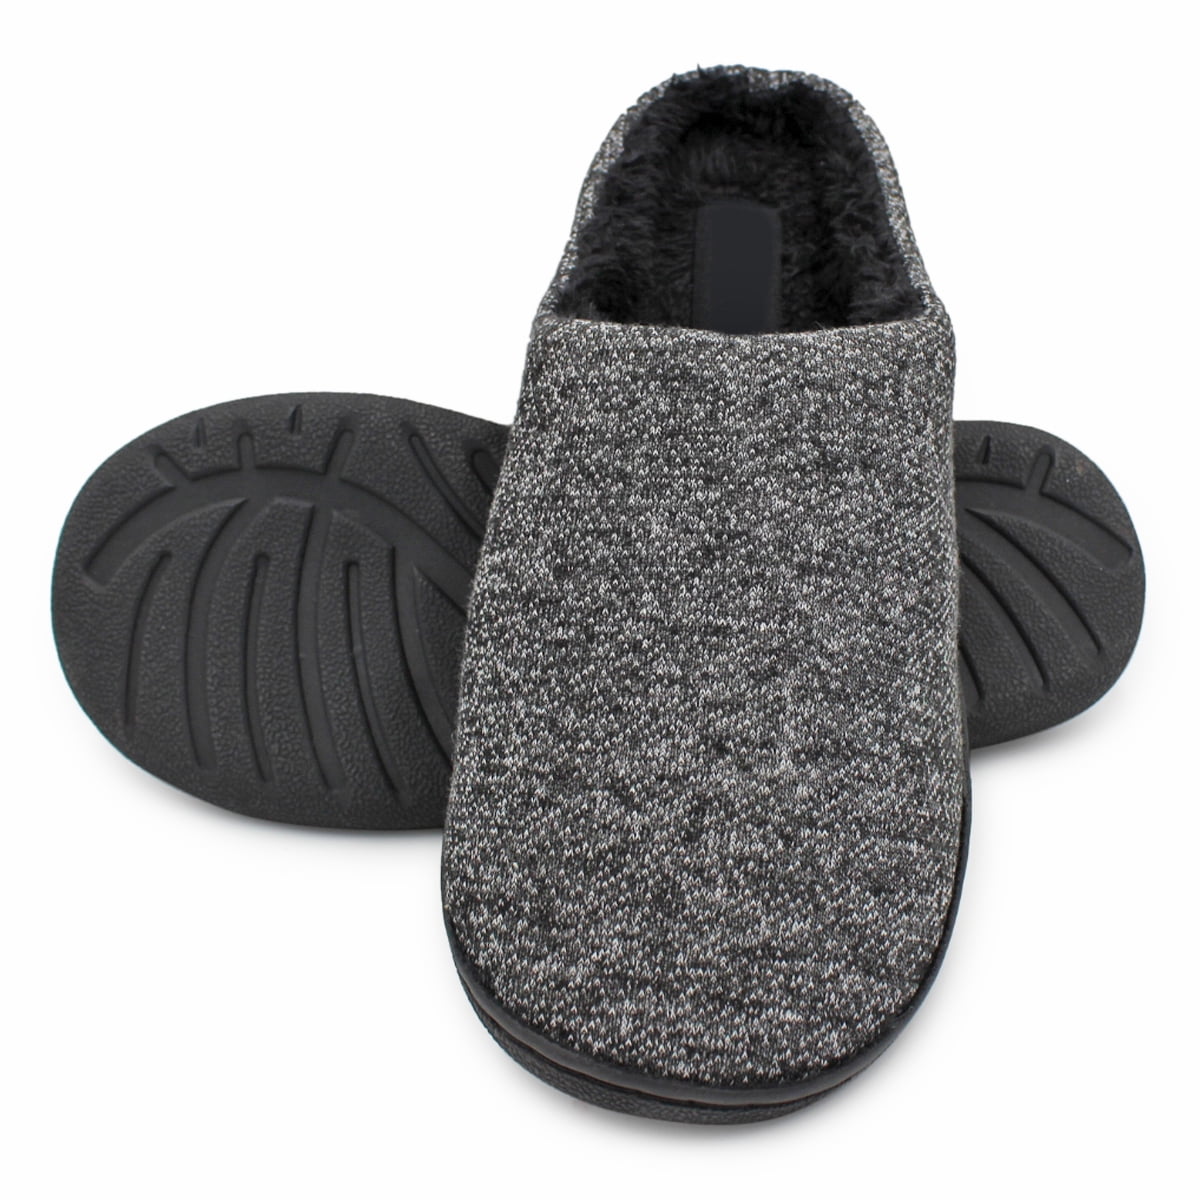 Mens Slip on Fleece Fur Lined Mules Warm Winter Slippers size UK 7 8 9 10 11 12 